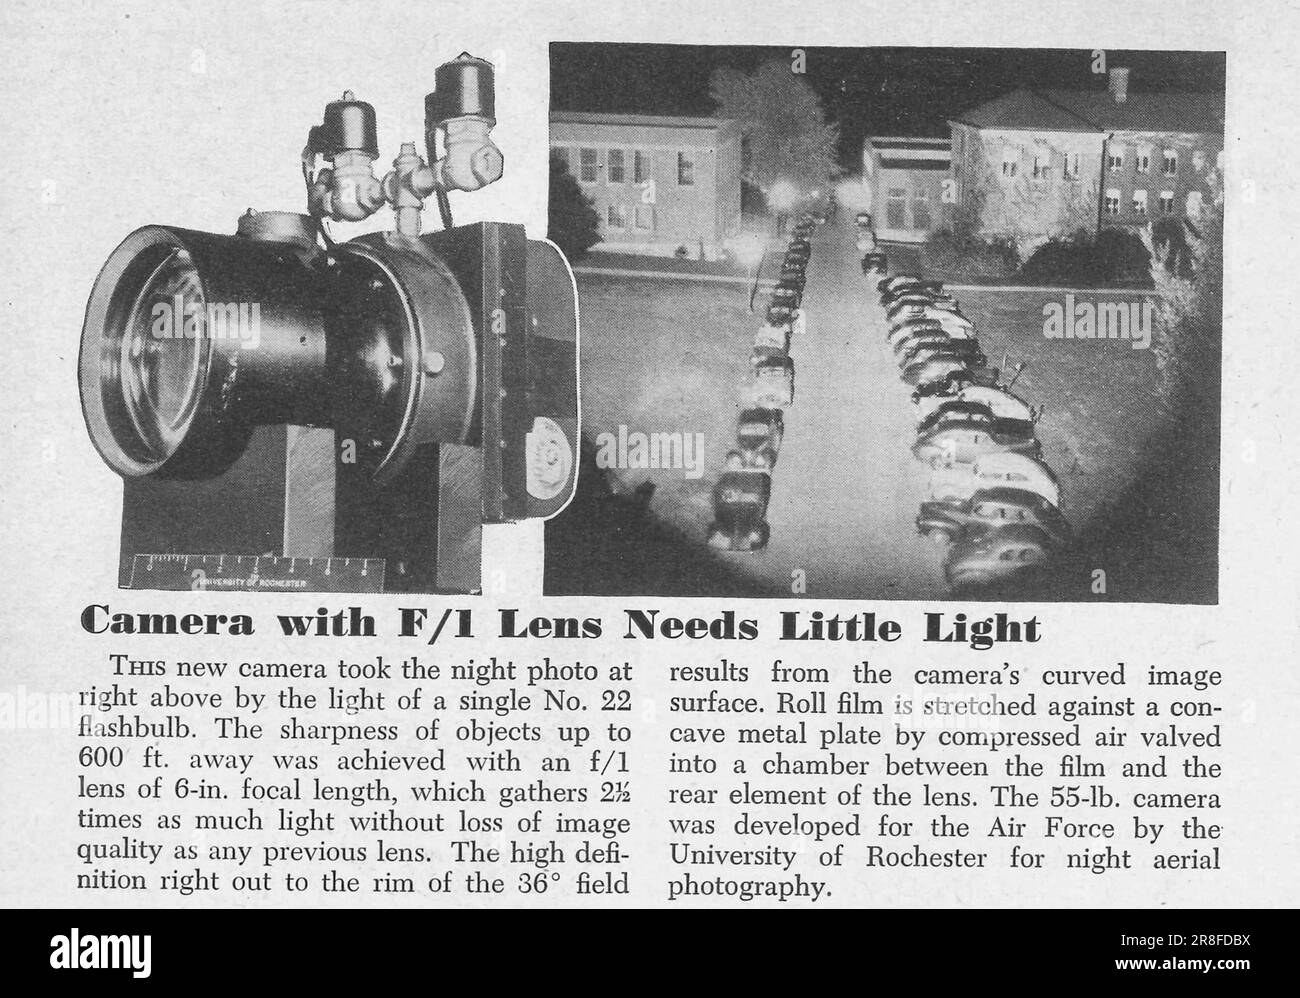 Erfindungen: Kamera mit F/1-Objektiv benötigt wenig Licht. Artikel über Erfindungen in Fotokameras im Magazin Popular Science, USA, Februar 1949 Stockfoto